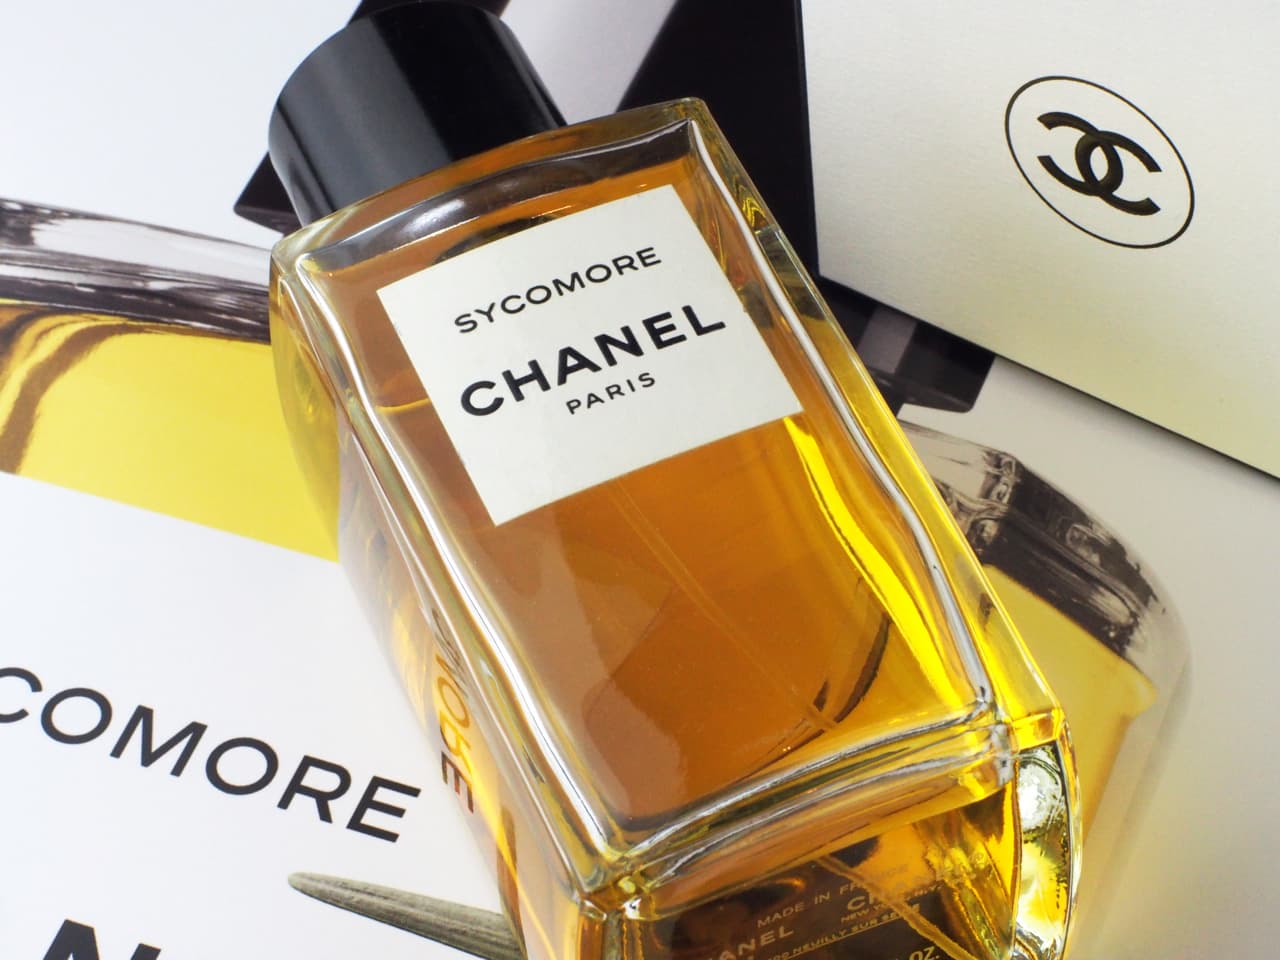 Mua Nước Hoa Chanel Coco Vaporisateur Spray 100ml cho nữ chính hãng Pháp  Giá Tốt